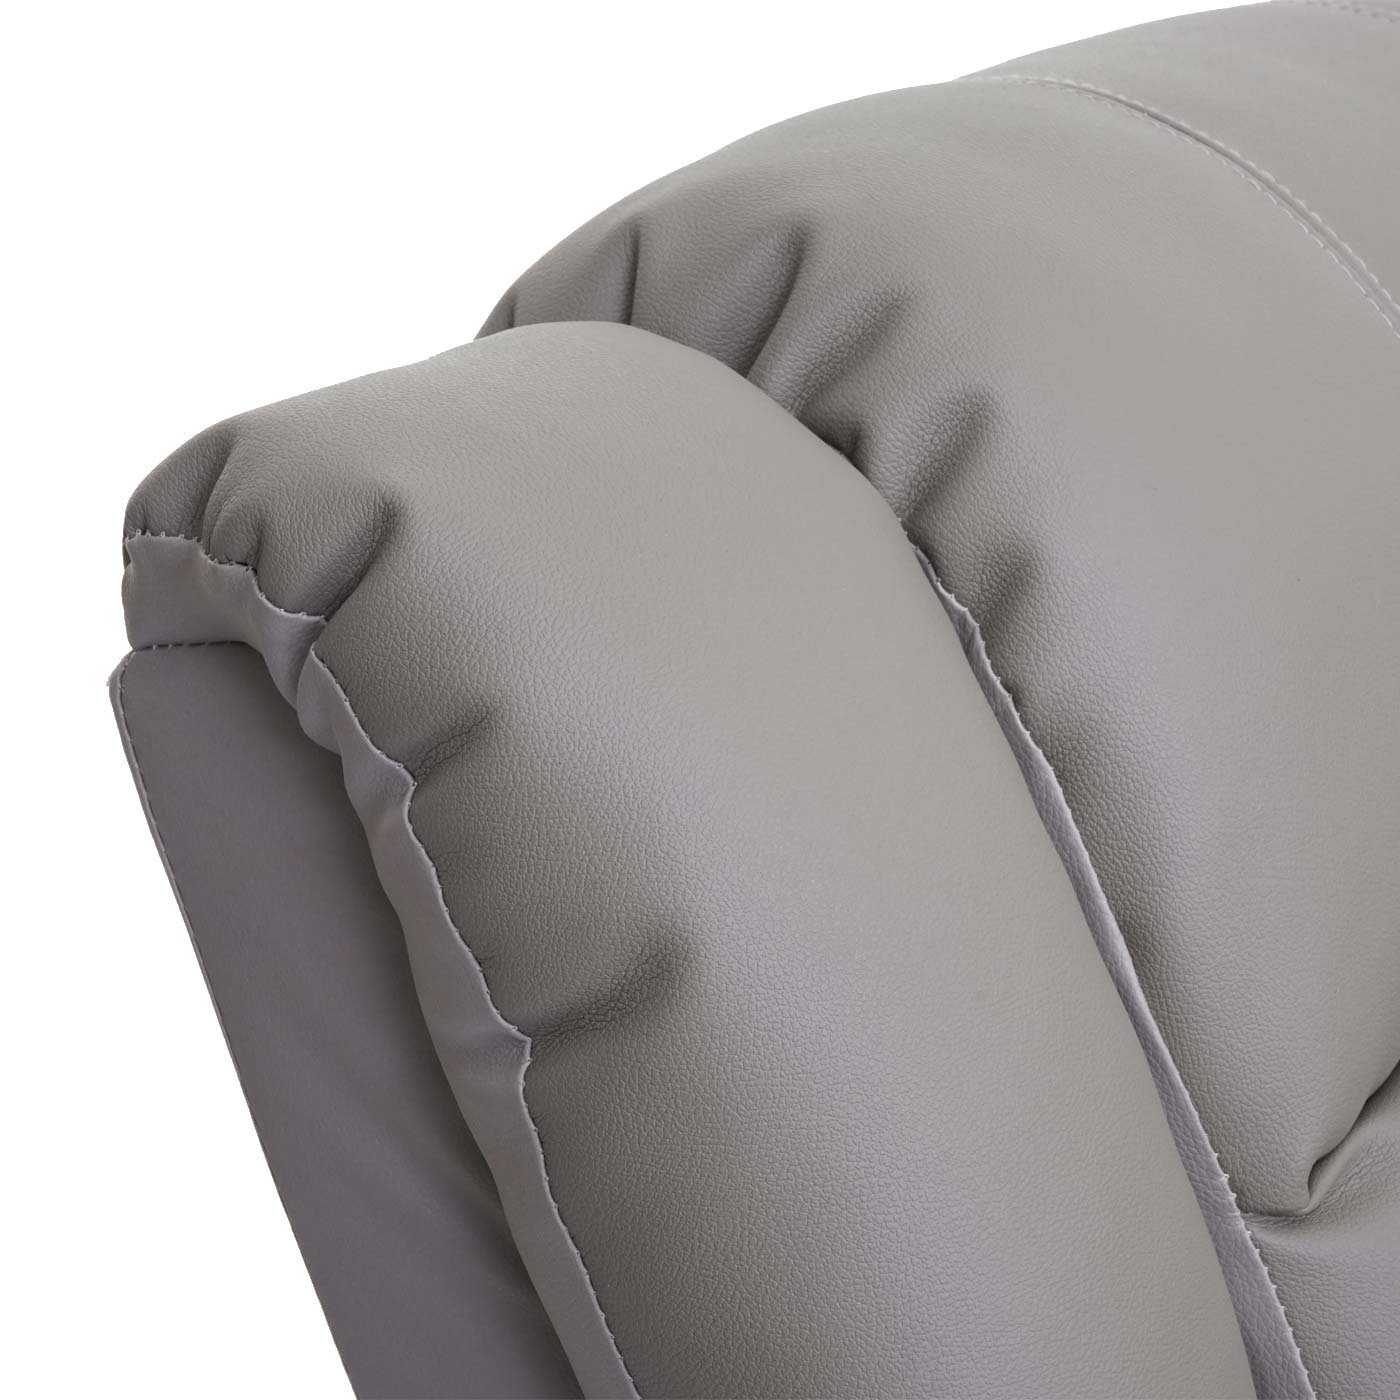 MCW TV-Sessel cm, verstellbar, MCW-G15, Liegefunktion Verstellbare taupe Rückenfläche, Liegefläche: Fußstütze 165